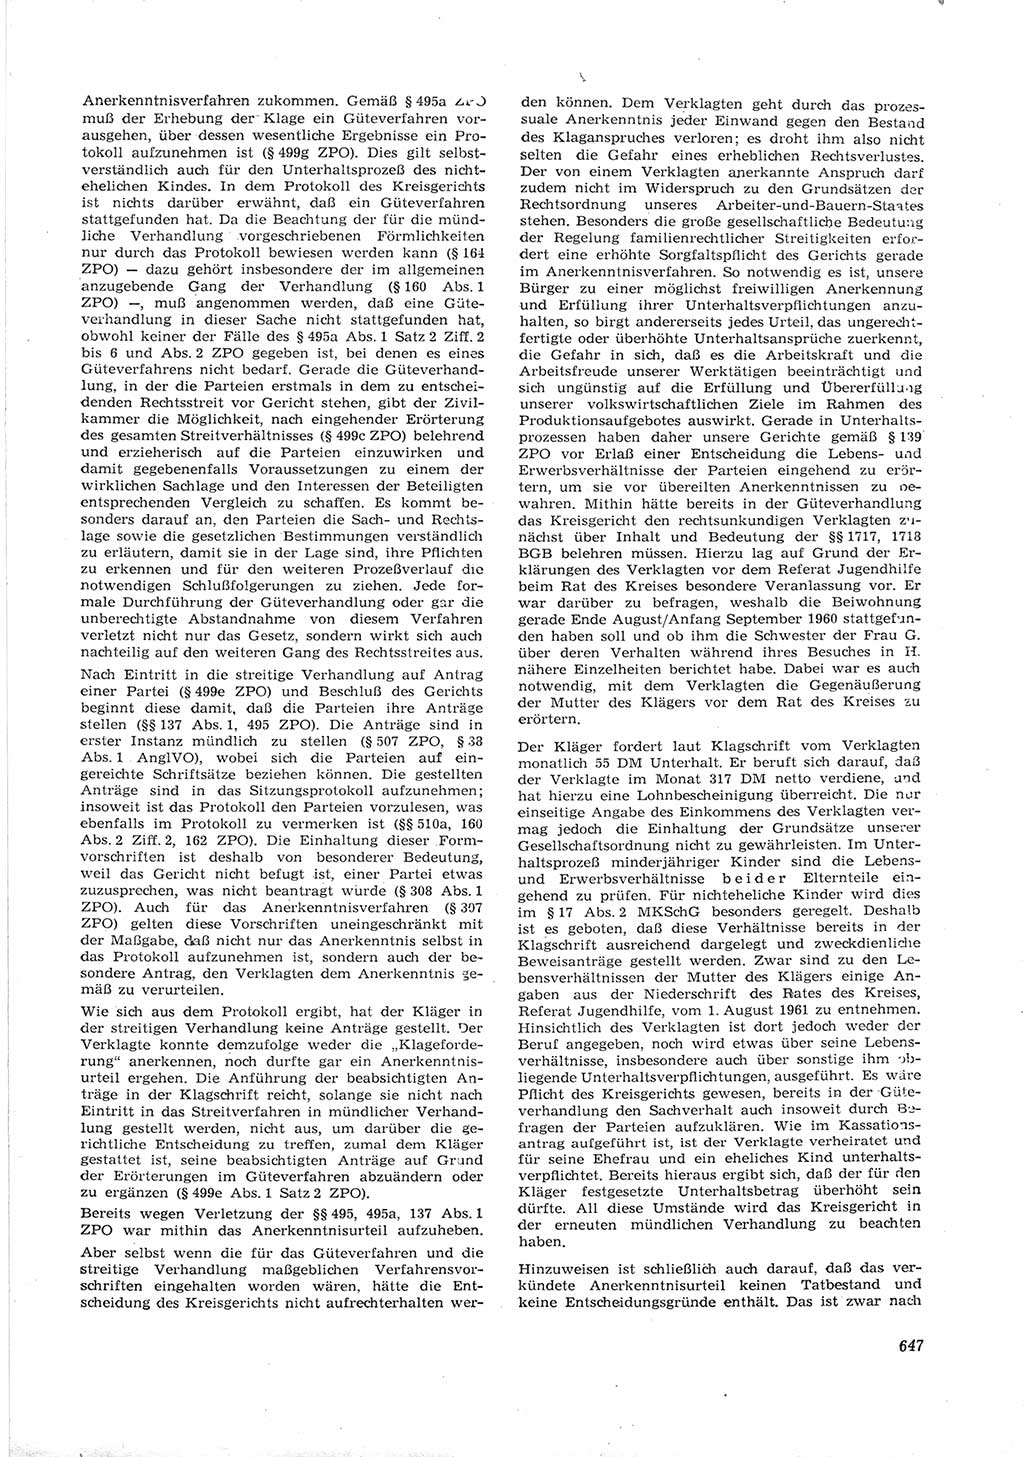 Neue Justiz (NJ), Zeitschrift für Recht und Rechtswissenschaft [Deutsche Demokratische Republik (DDR)], 16. Jahrgang 1962, Seite 647 (NJ DDR 1962, S. 647)